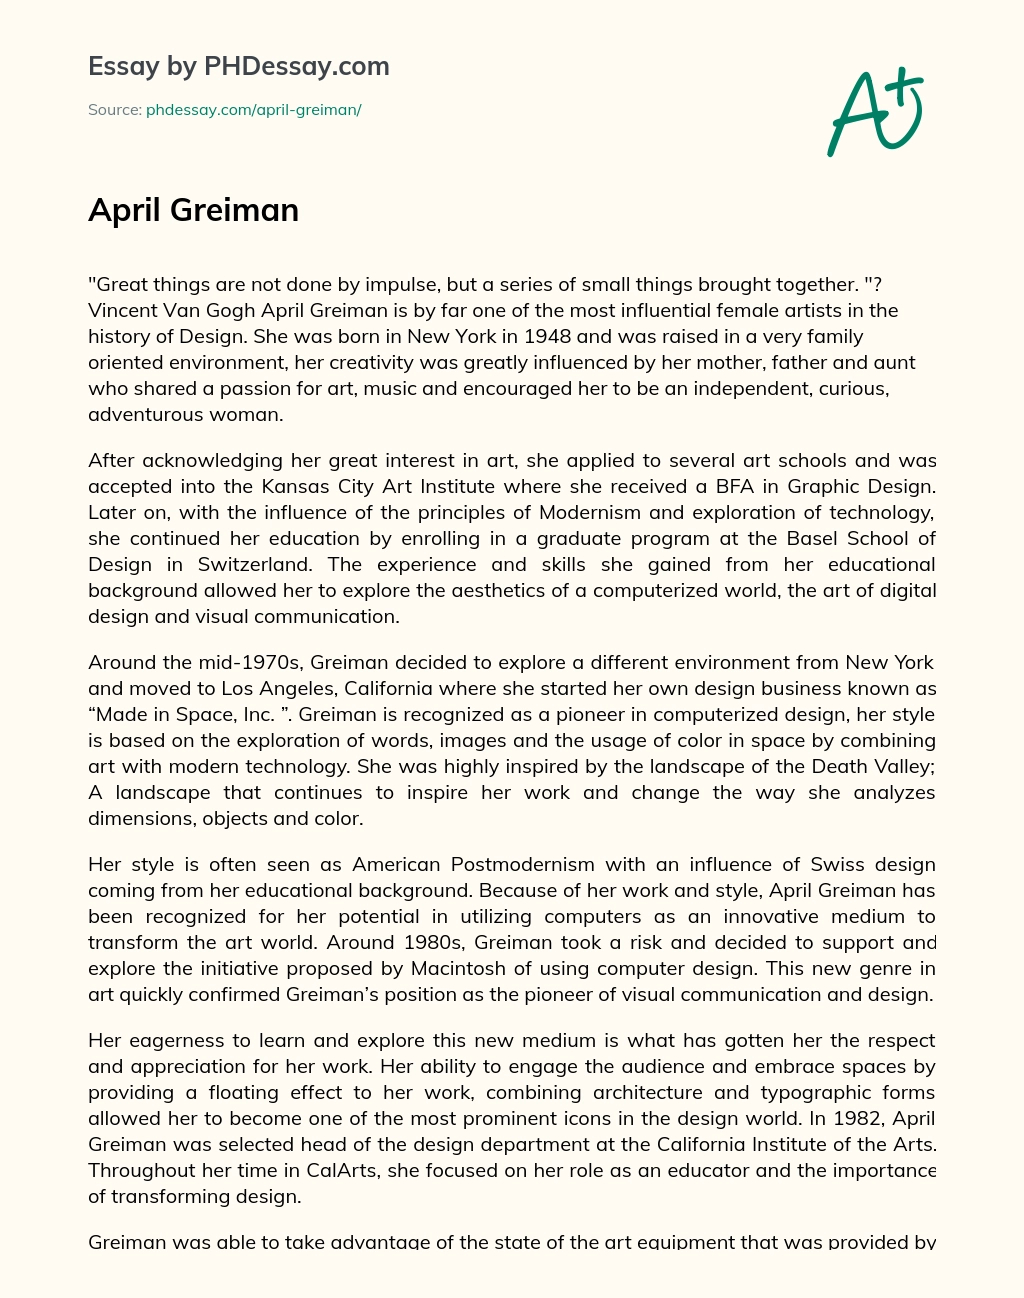 April Greiman essay